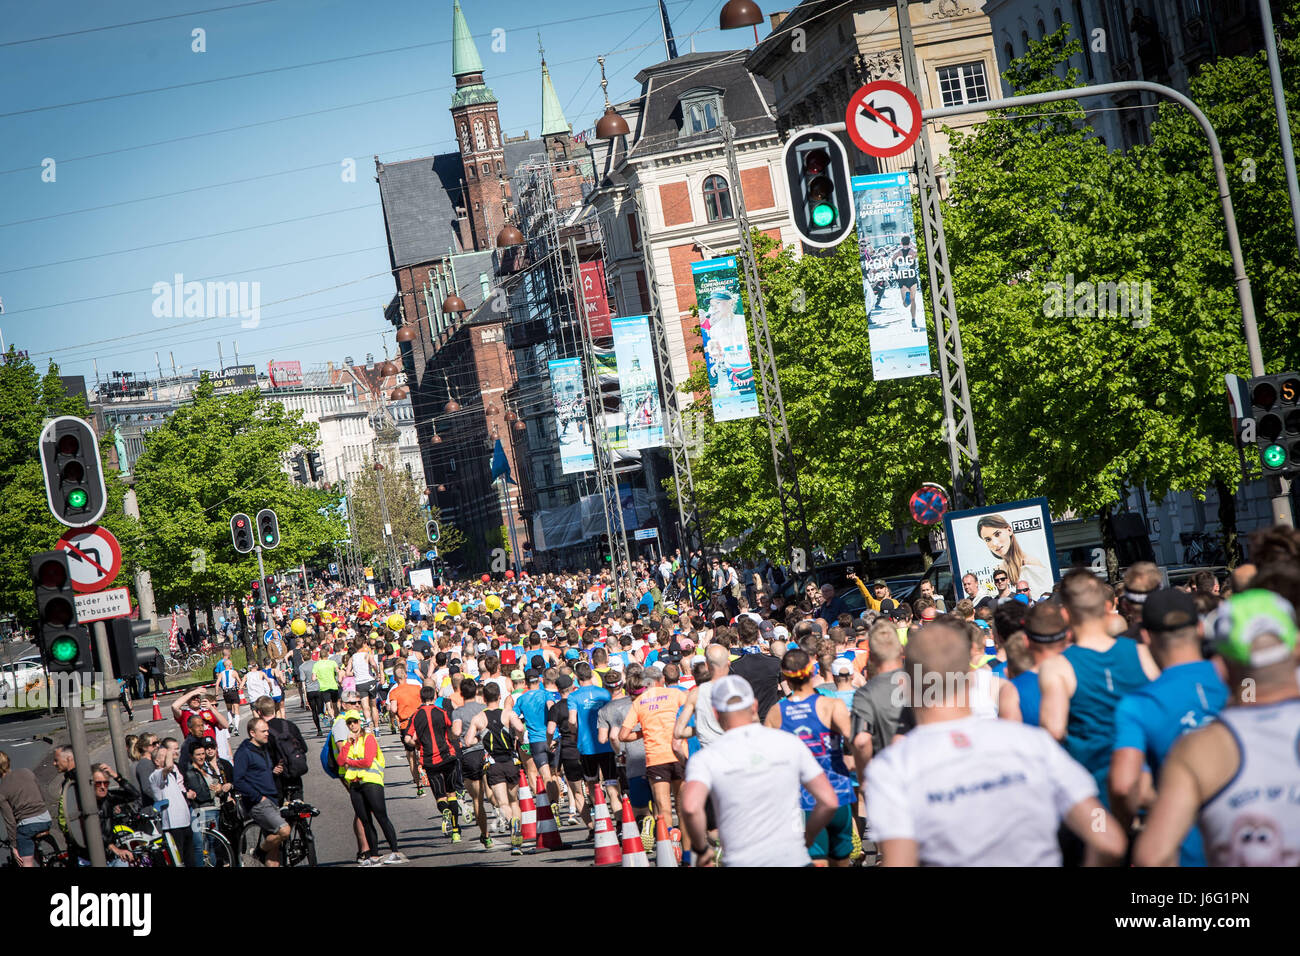 Copenhague, Dinamarca. 21 de mayo, 2017. Más de 8.500 corredores de todo el mundo enfrentaron altas temperaturas para tomar parte en la Maratón de Copenhague 2017, Telenor. Crédito: Matthew James Harrison/Alamy Live News Foto de stock